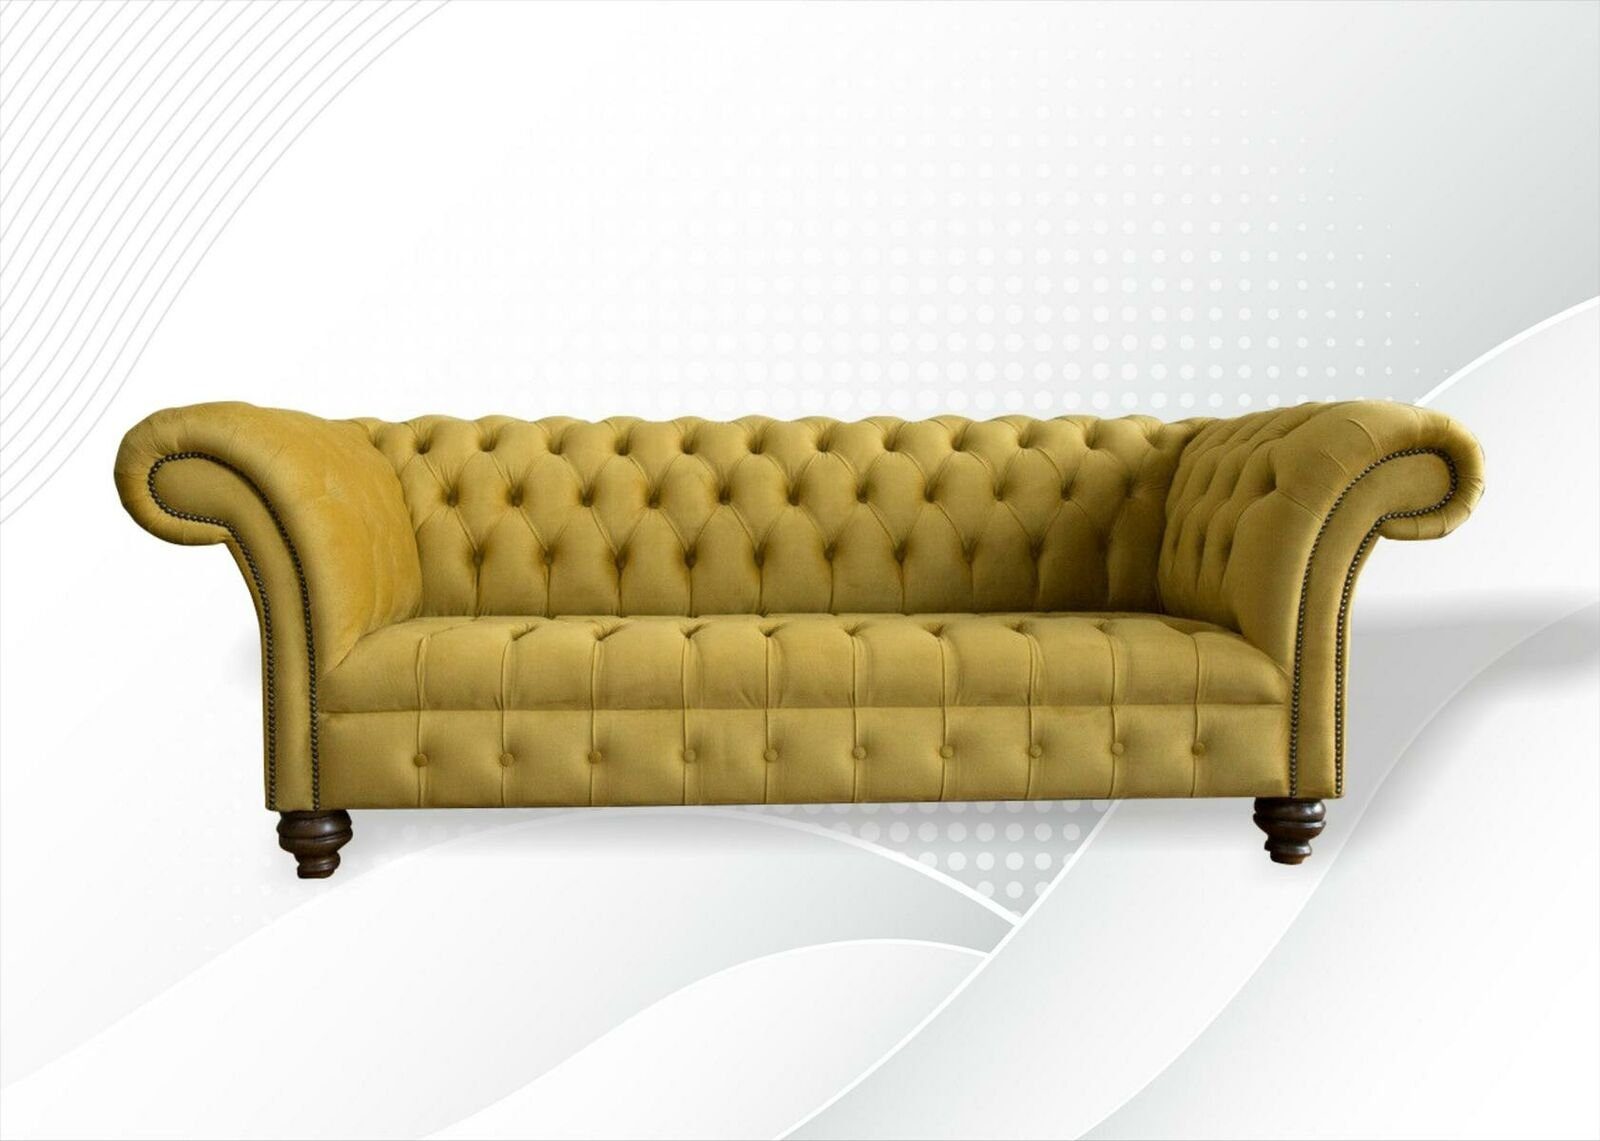 JVmoebel Chesterfield-Sofa Gelber Dreisitzer luxus Chesterfield 3-er Couch Design Neu, Made in Europe | Chesterfield-Sofas